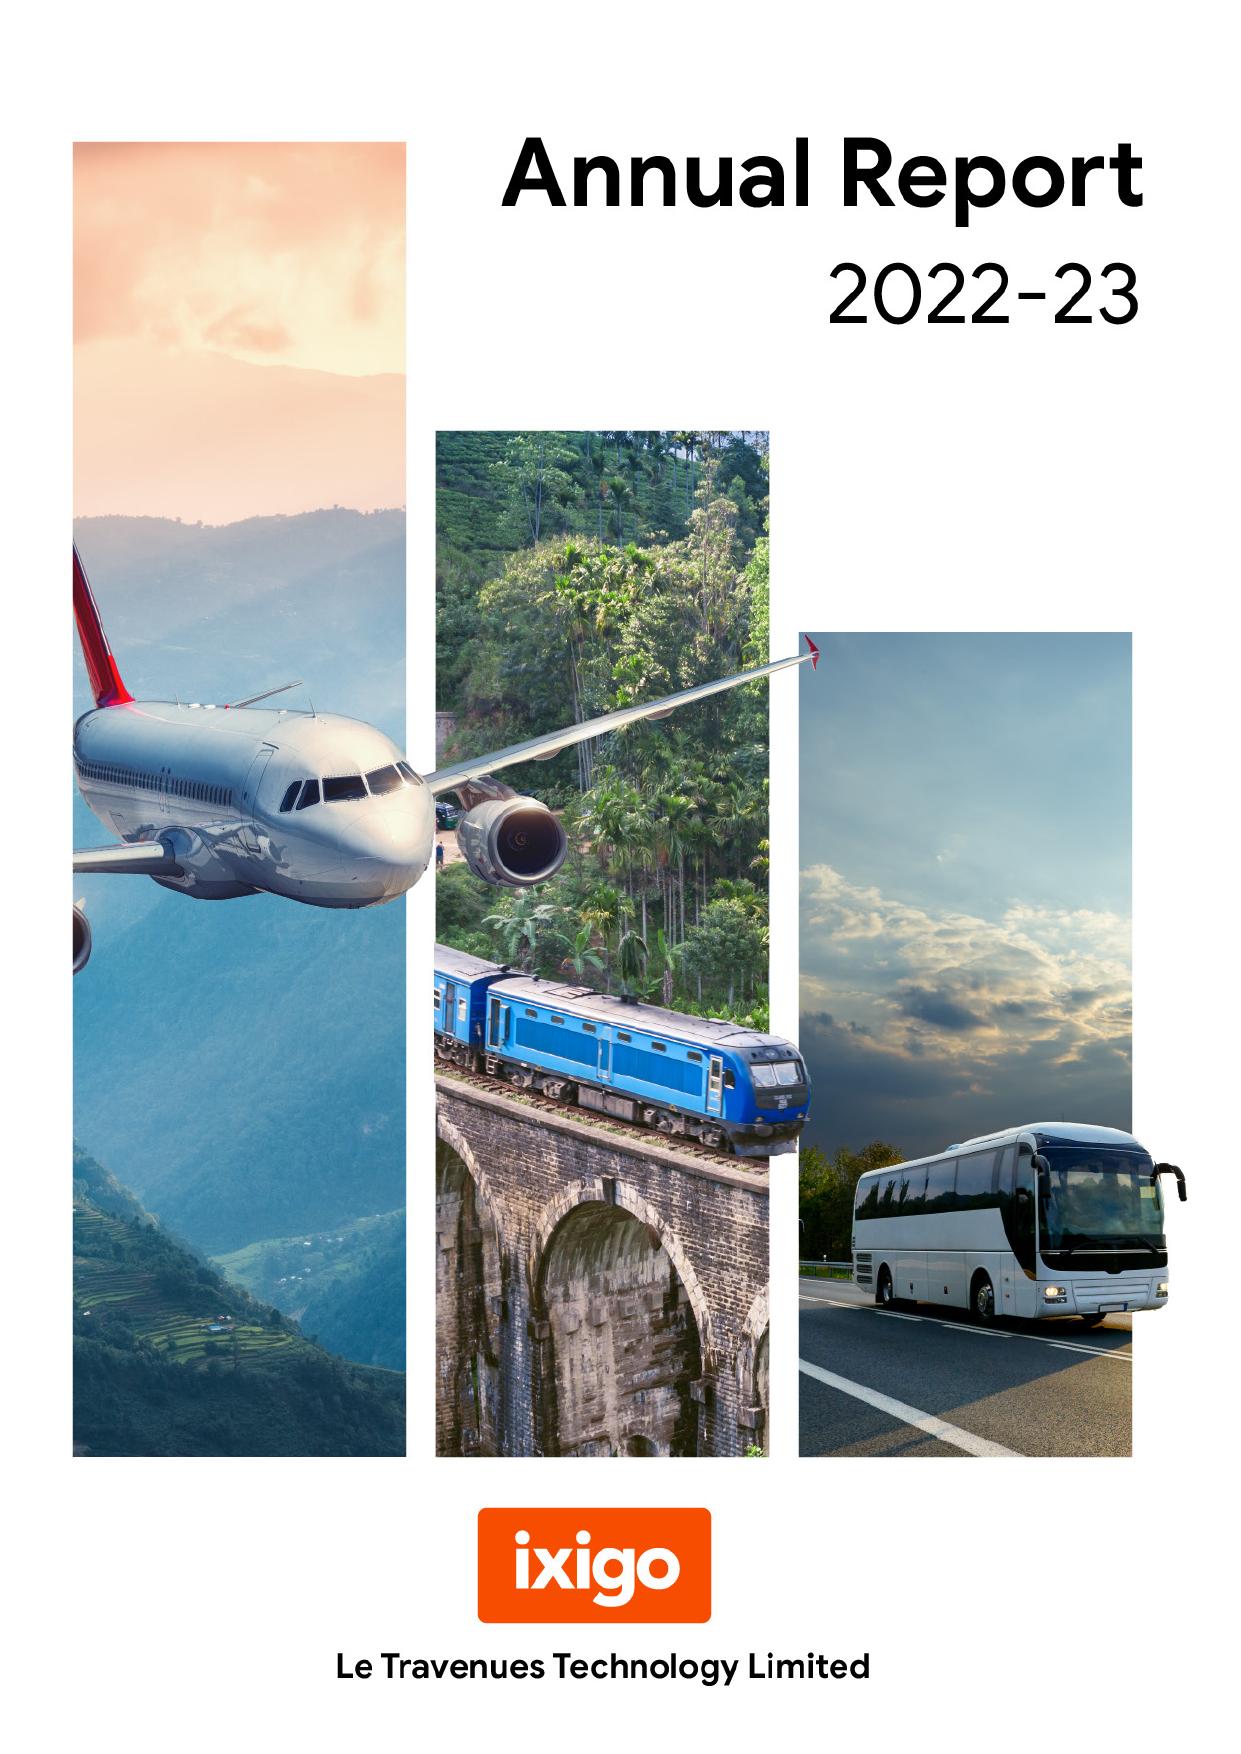 IXIGO 2022 Annual Report